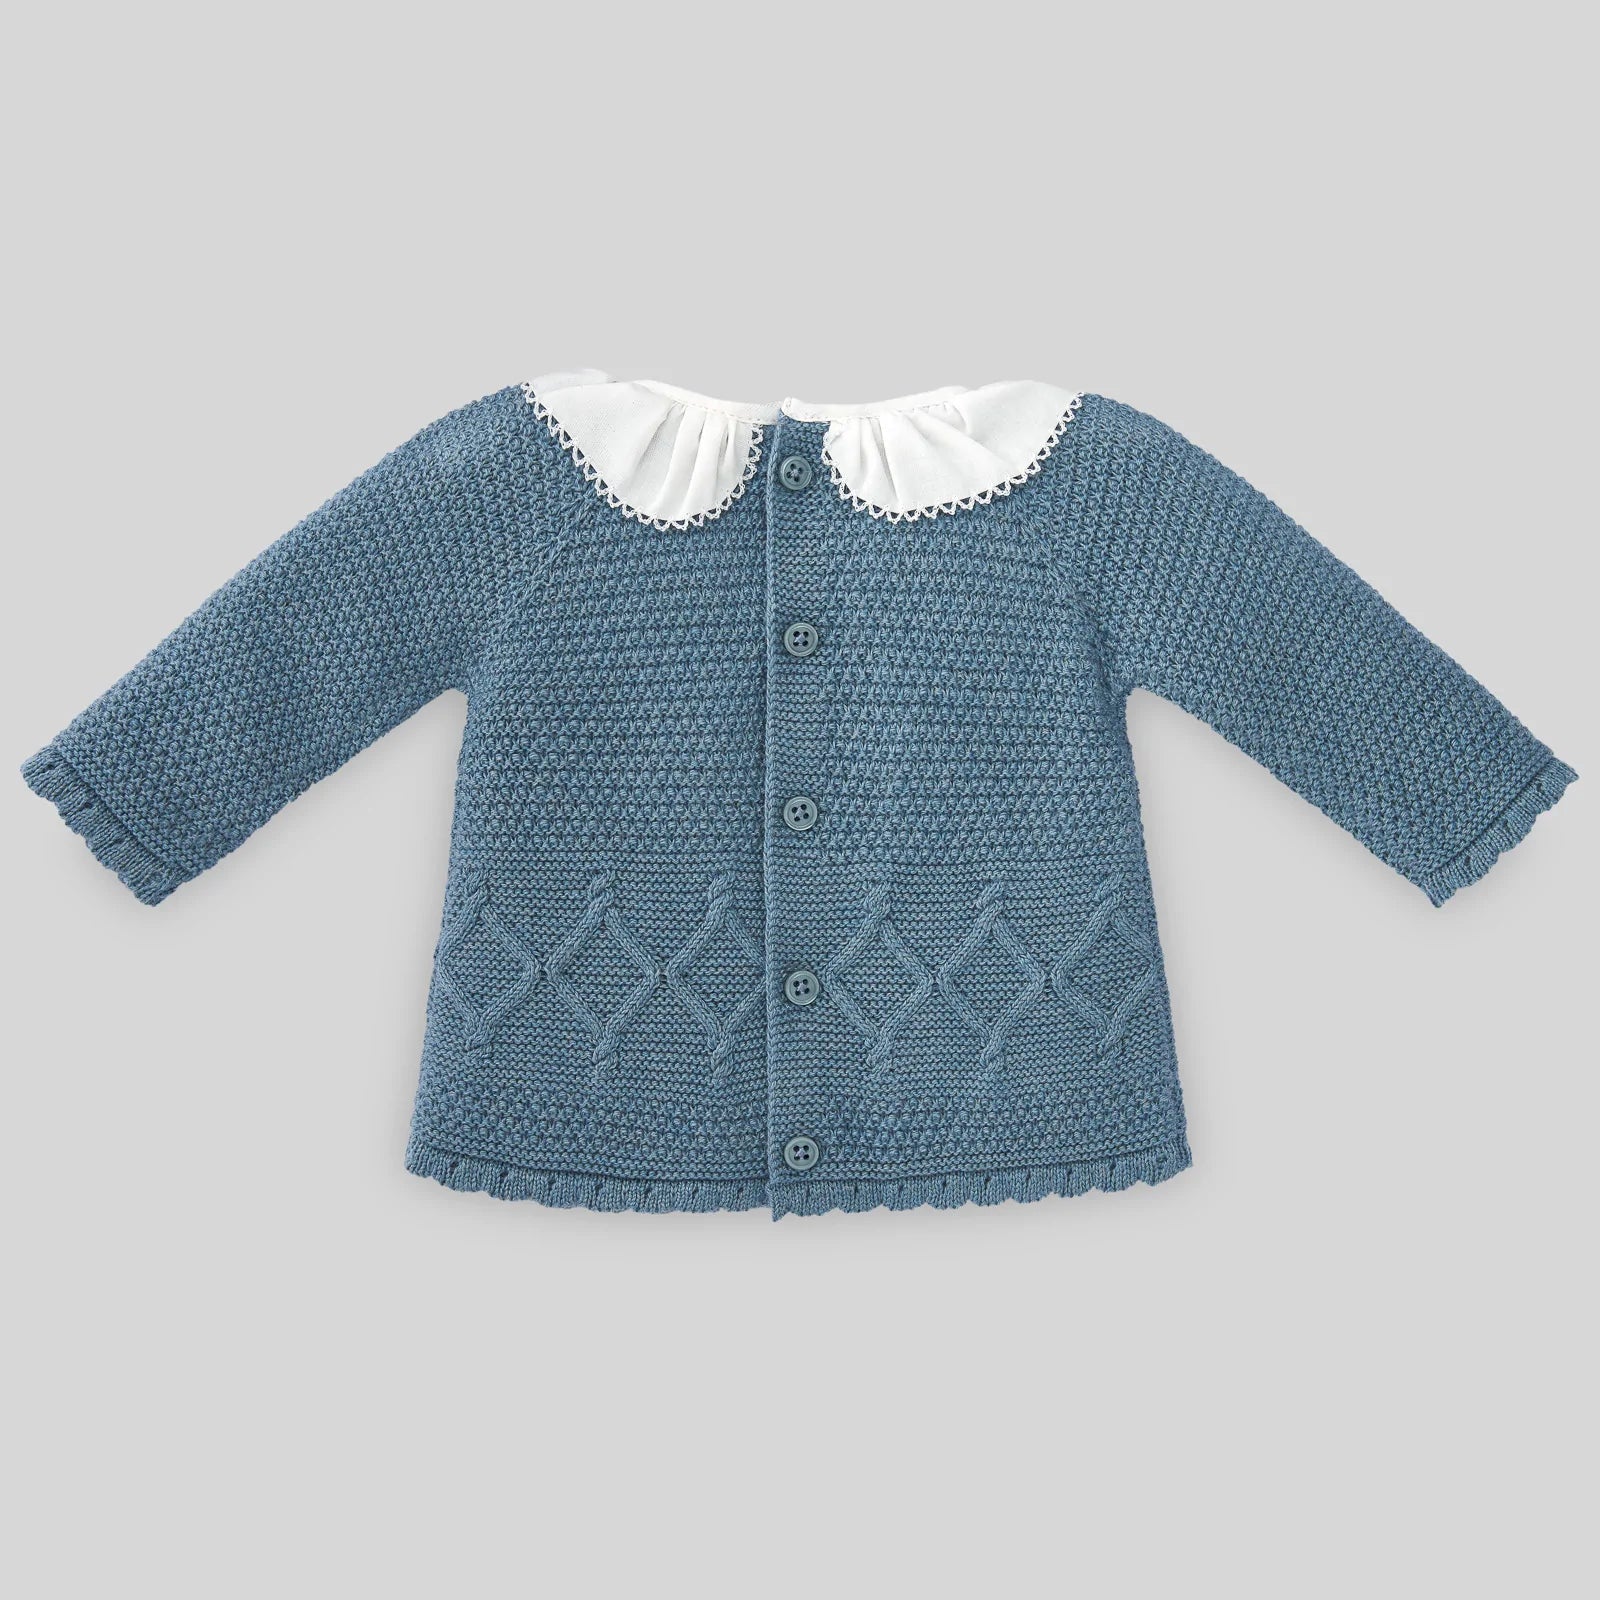 Blue Knit Baby Set